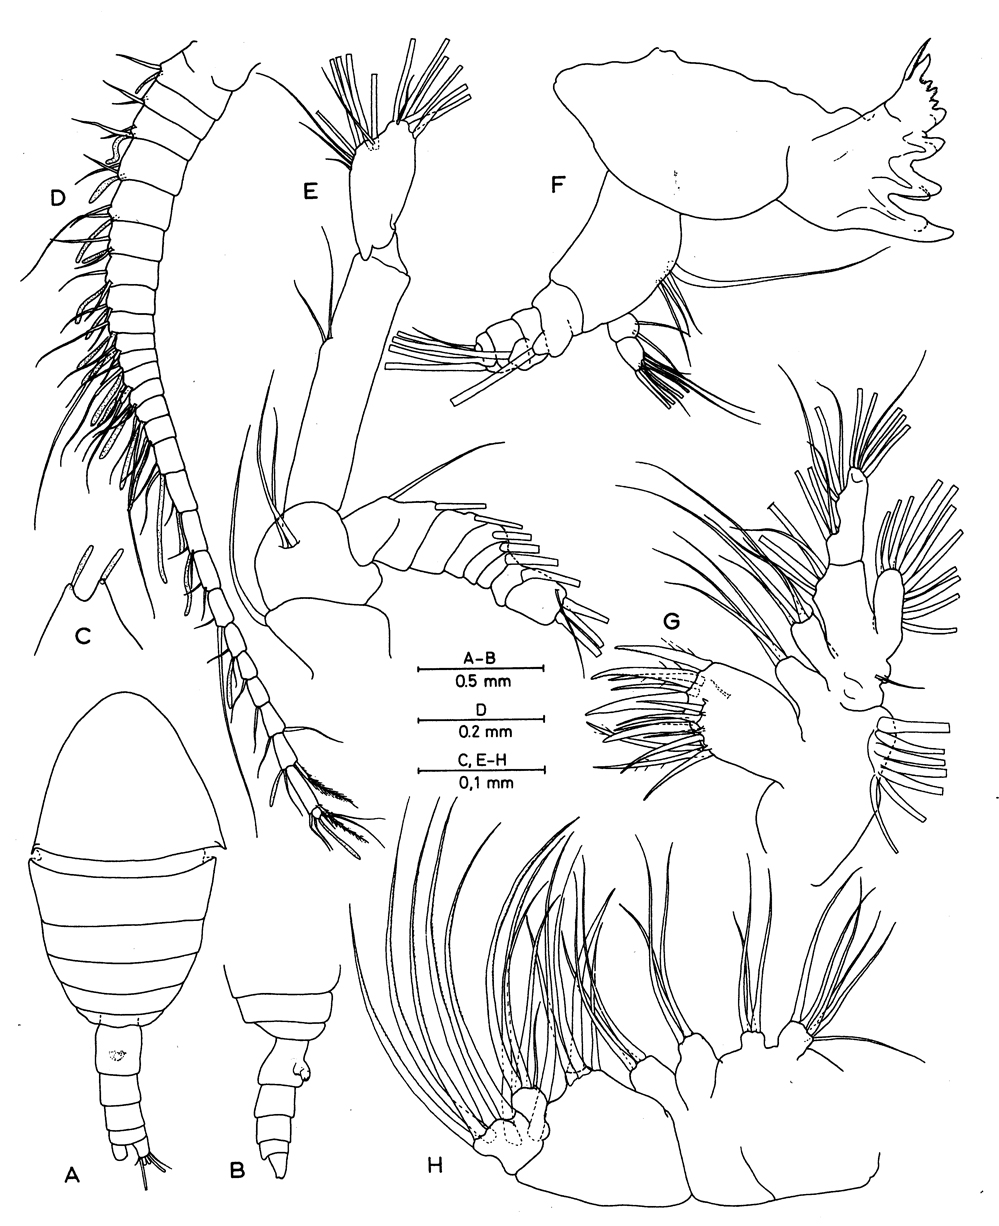 Espce Erebonectes nesioticus - Planche 1 de figures morphologiques